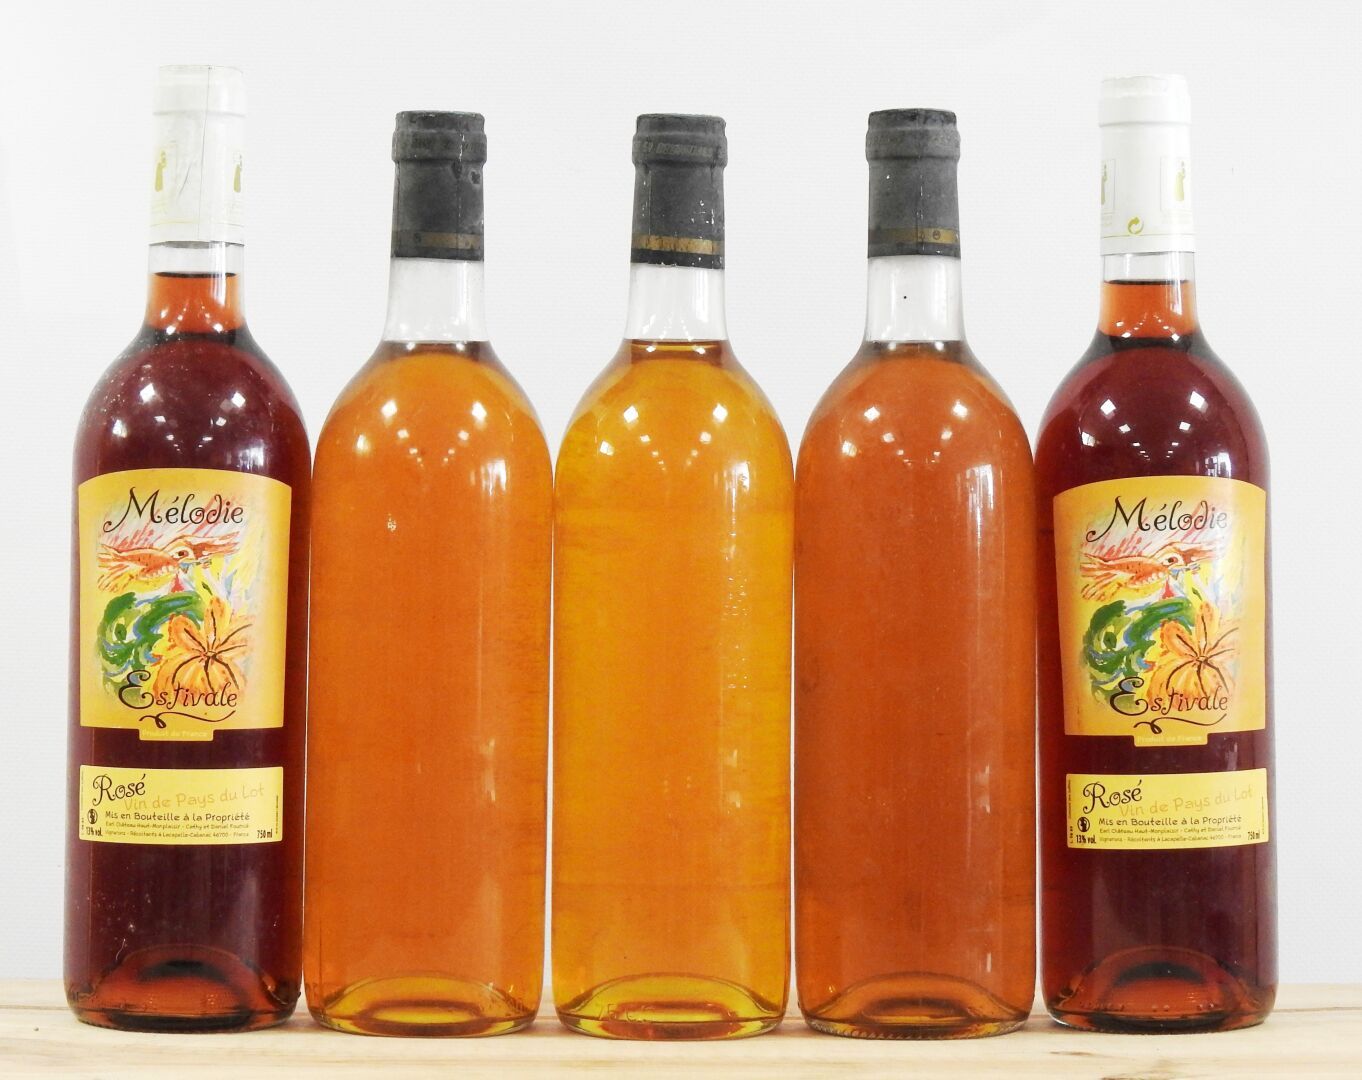 Null 5瓶

2 Mélodie Estivale - Rosé vinde Pays du lot

3瓶 "Decouverte "白葡萄酒

磨损的标&hellip;